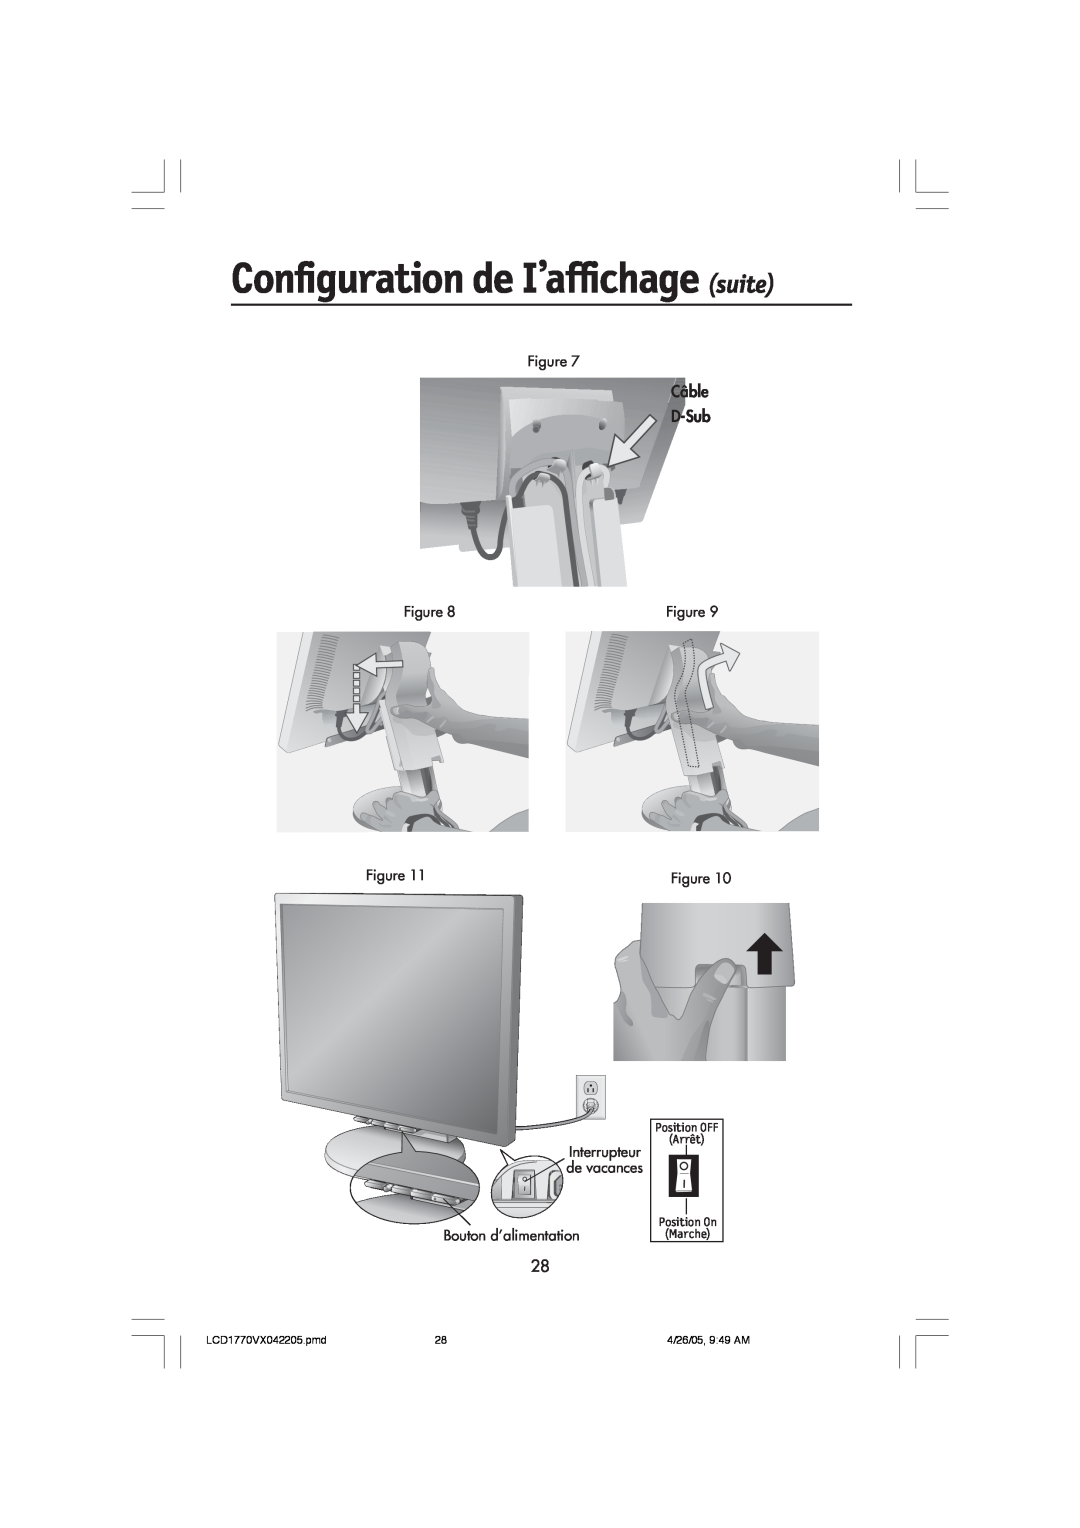 NEC Configuration de I’affichage suite, Câble D-Sub, Bouton d’alimentation, LCD1770VX042205.pmd, 4/26/05, 949 AM 